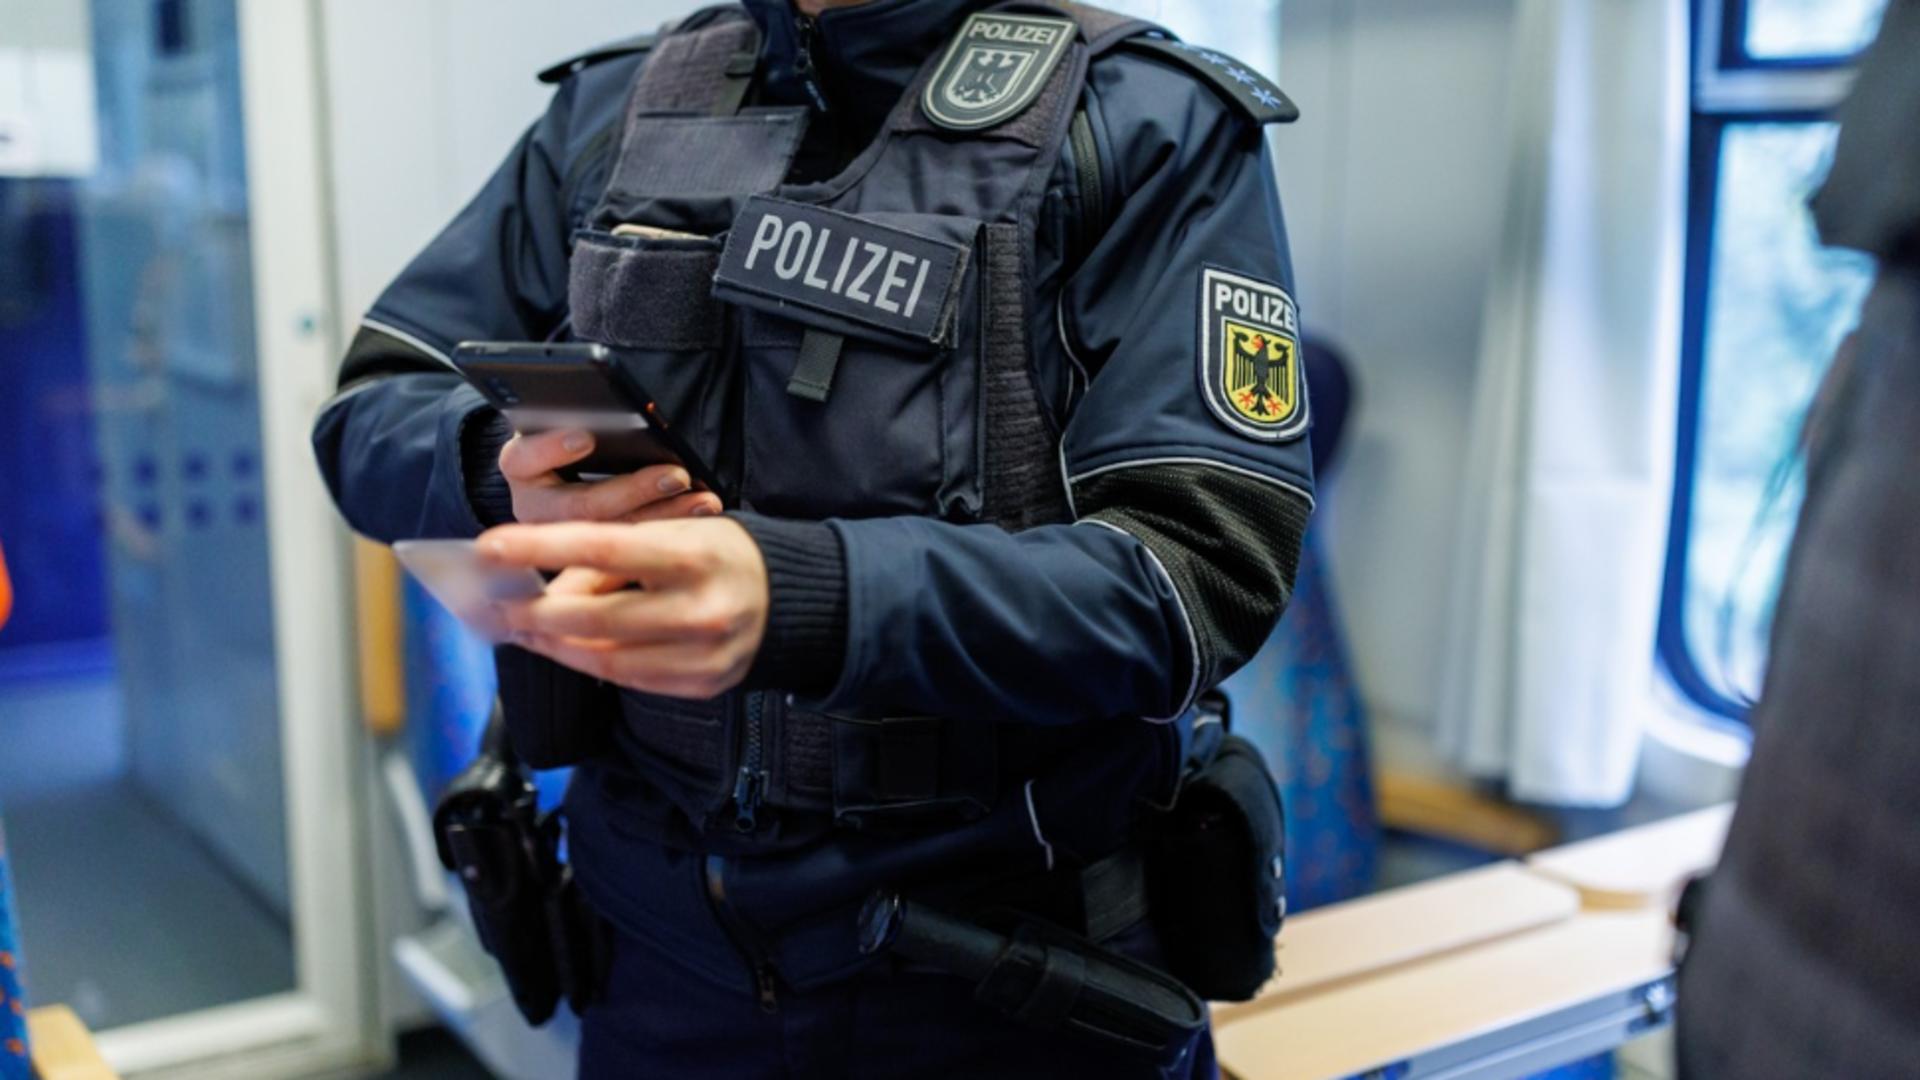 Poliția de frontieră din Germania. Foto: Profimedia